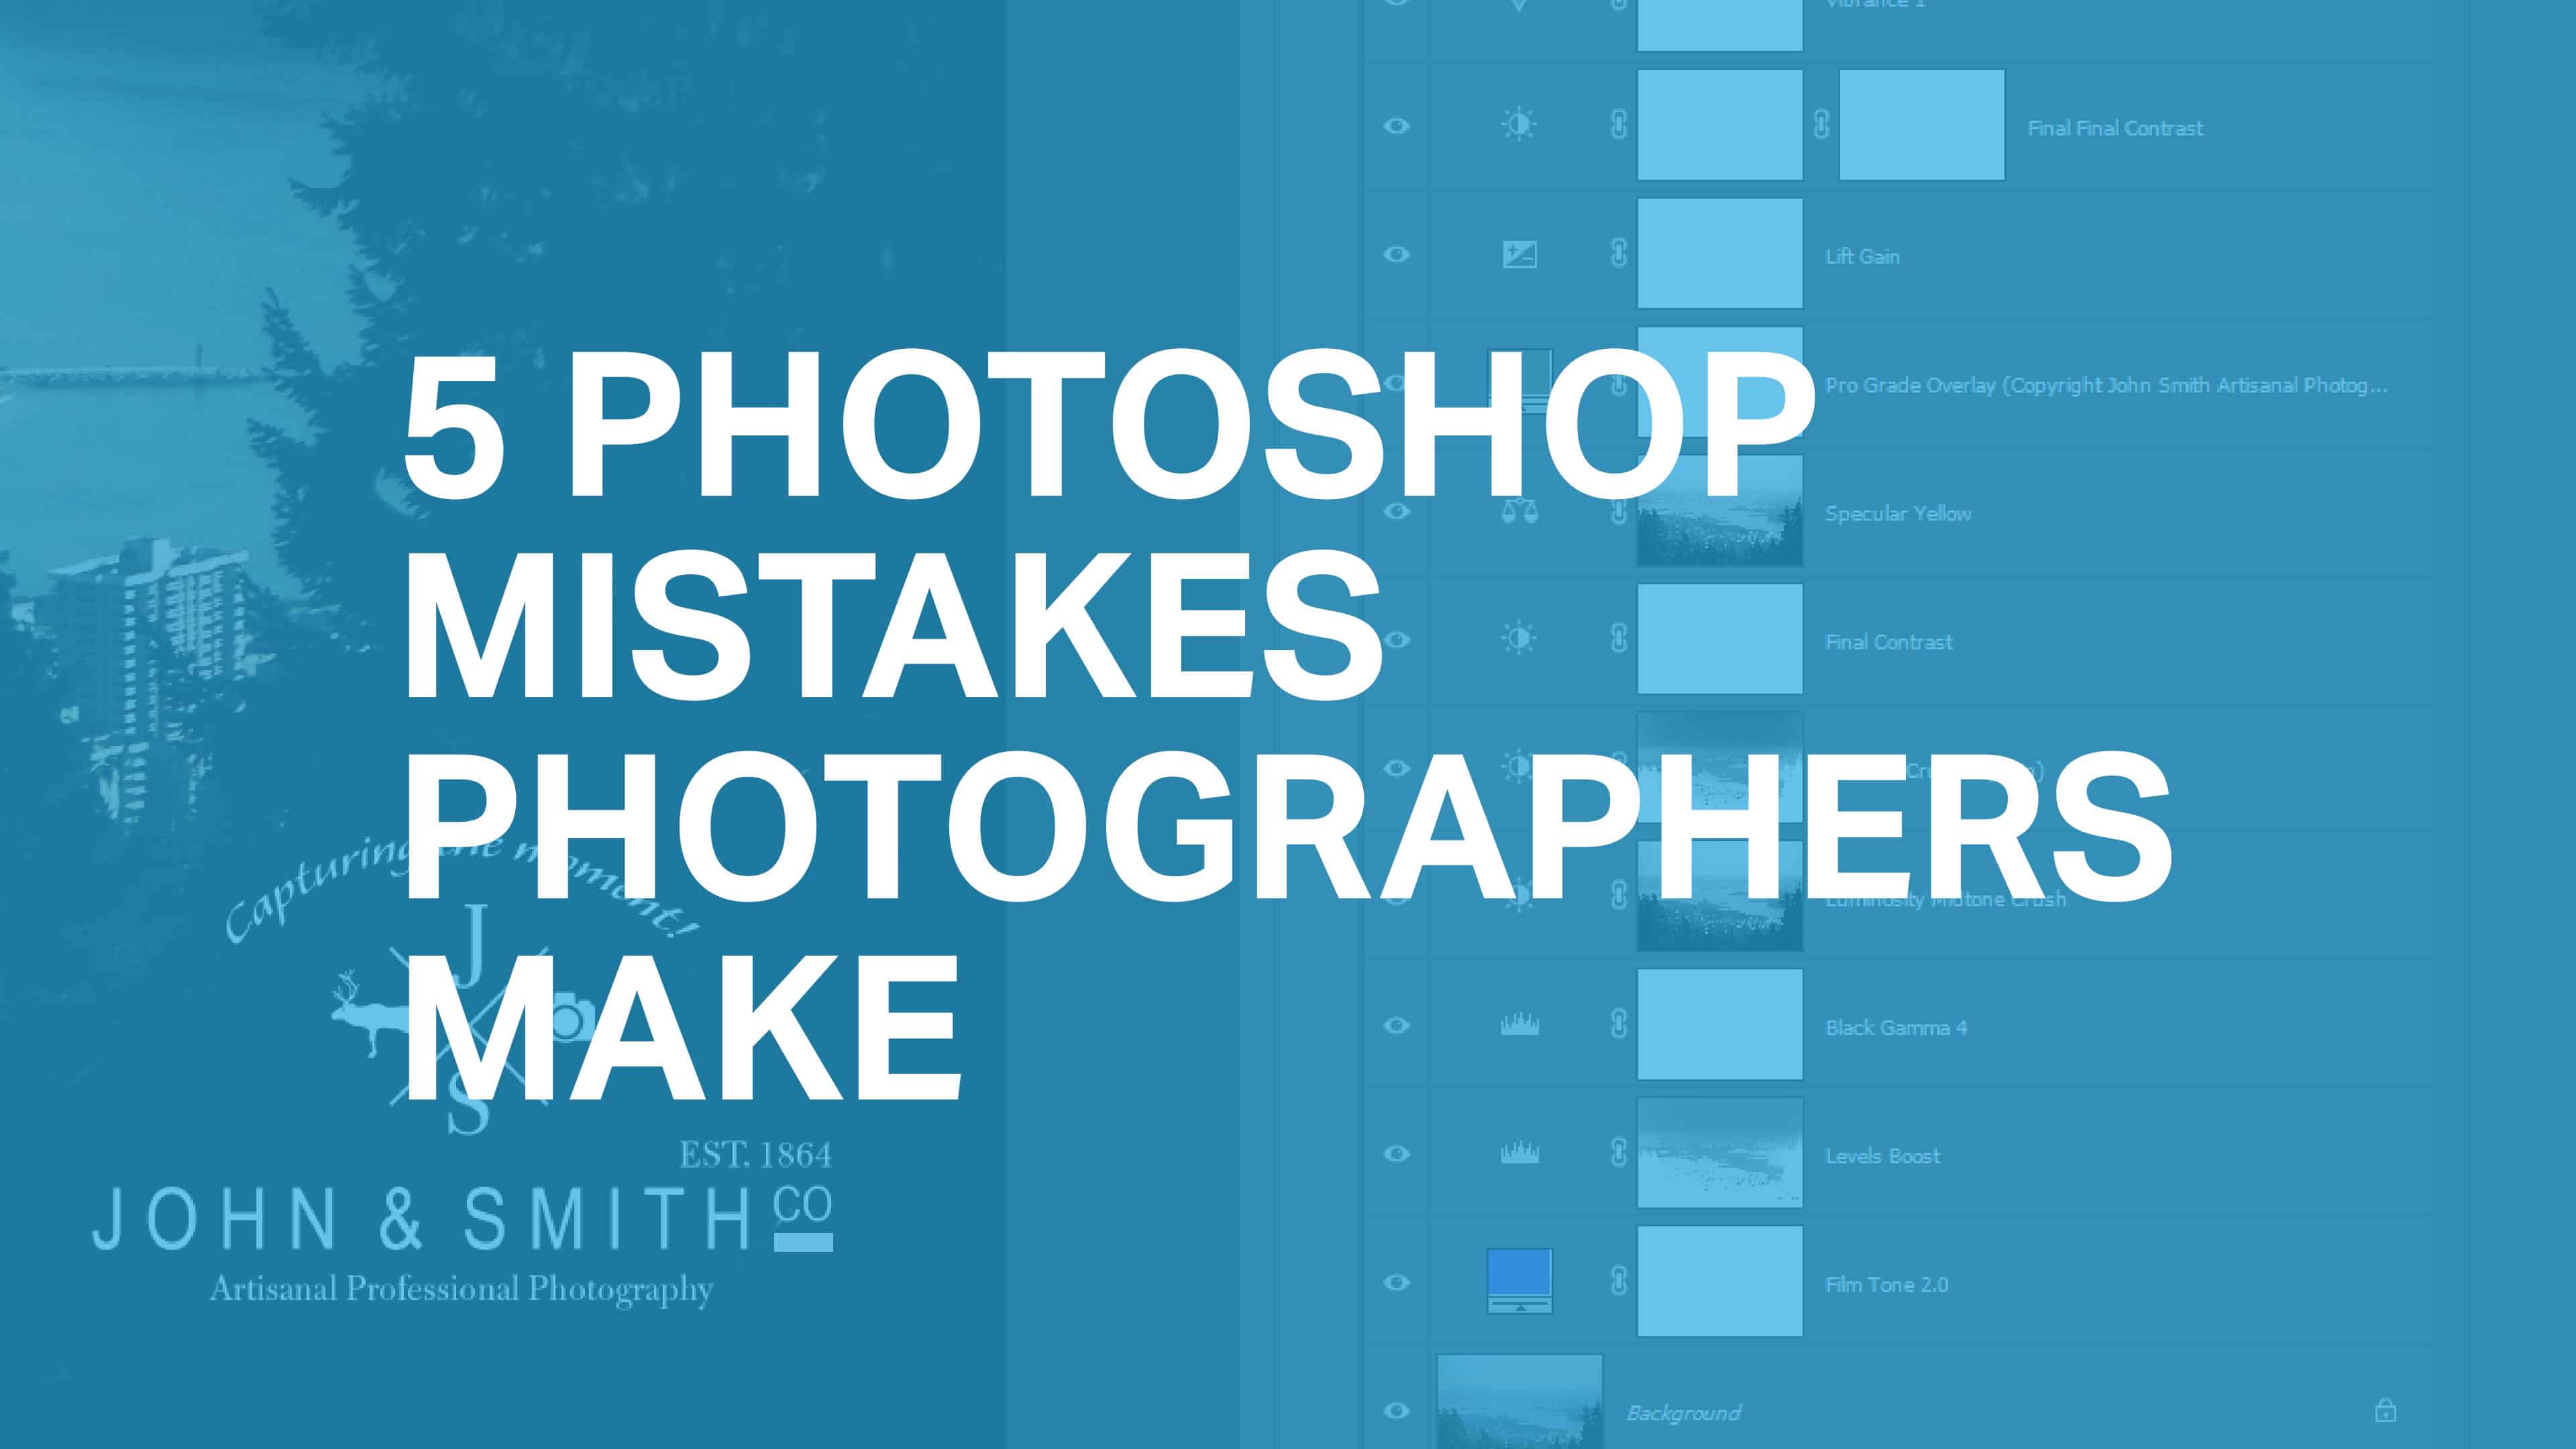 5 Photoshop Mistakes Photographers Make